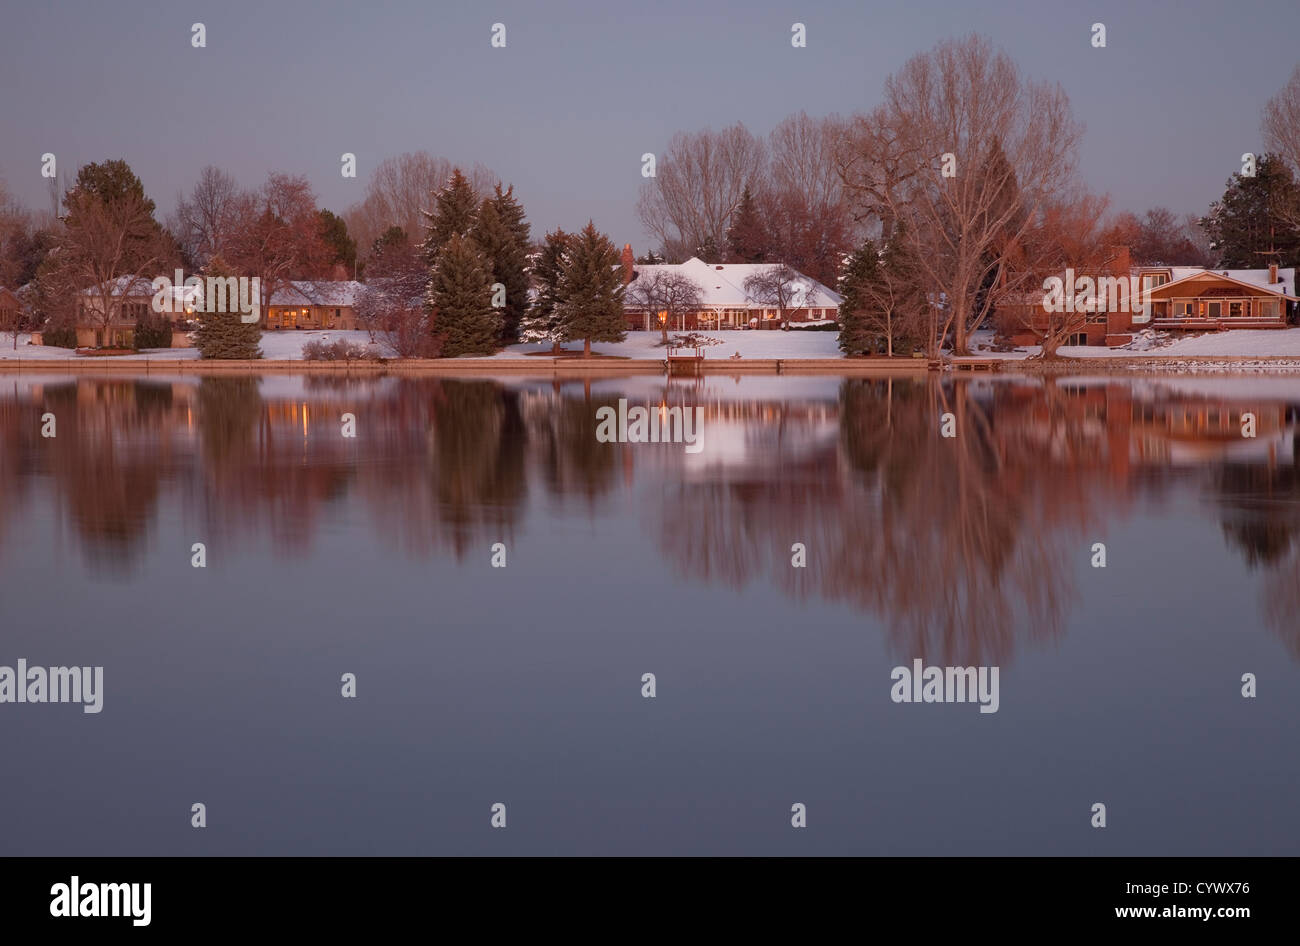 Logements de Luxe avec des arbres sur les rives d'un lac au crépuscule dans un paysage d'hiver, Fort Collins, Colorado Banque D'Images